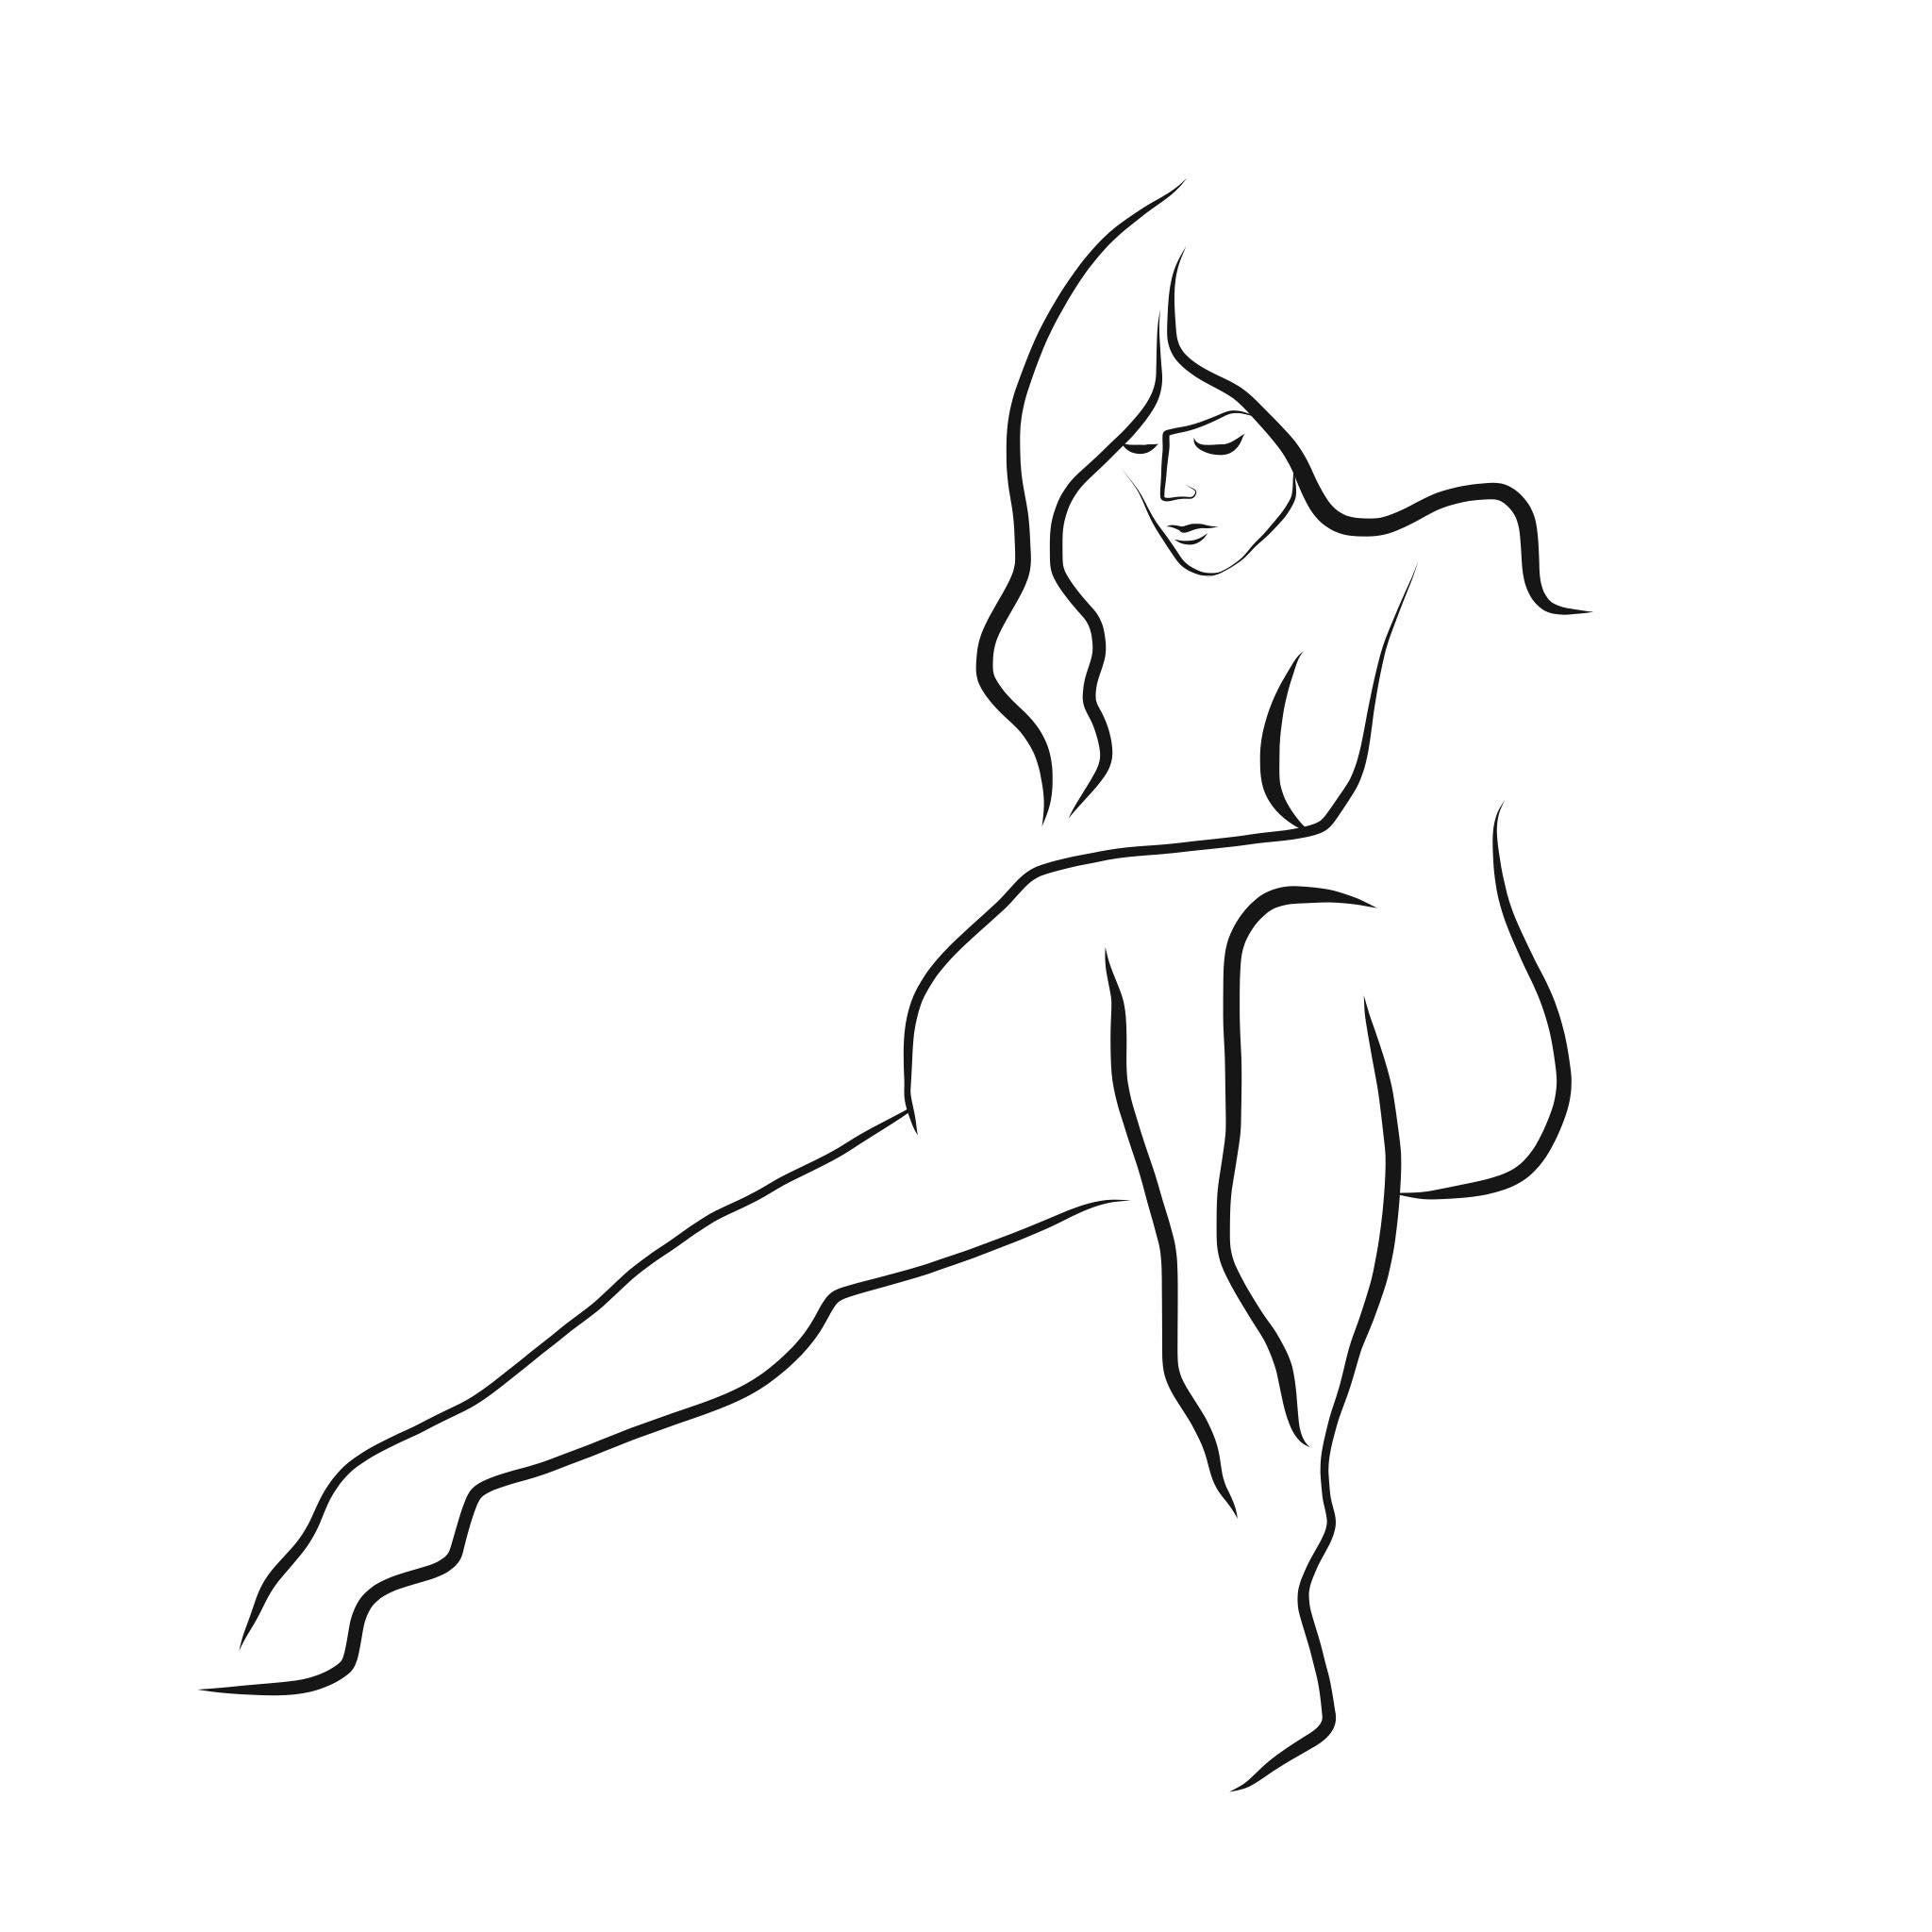 Michael Binkley Nude Print - Haiku #40 - Digital Vector Drawing Seated Female Nude Woman Figure